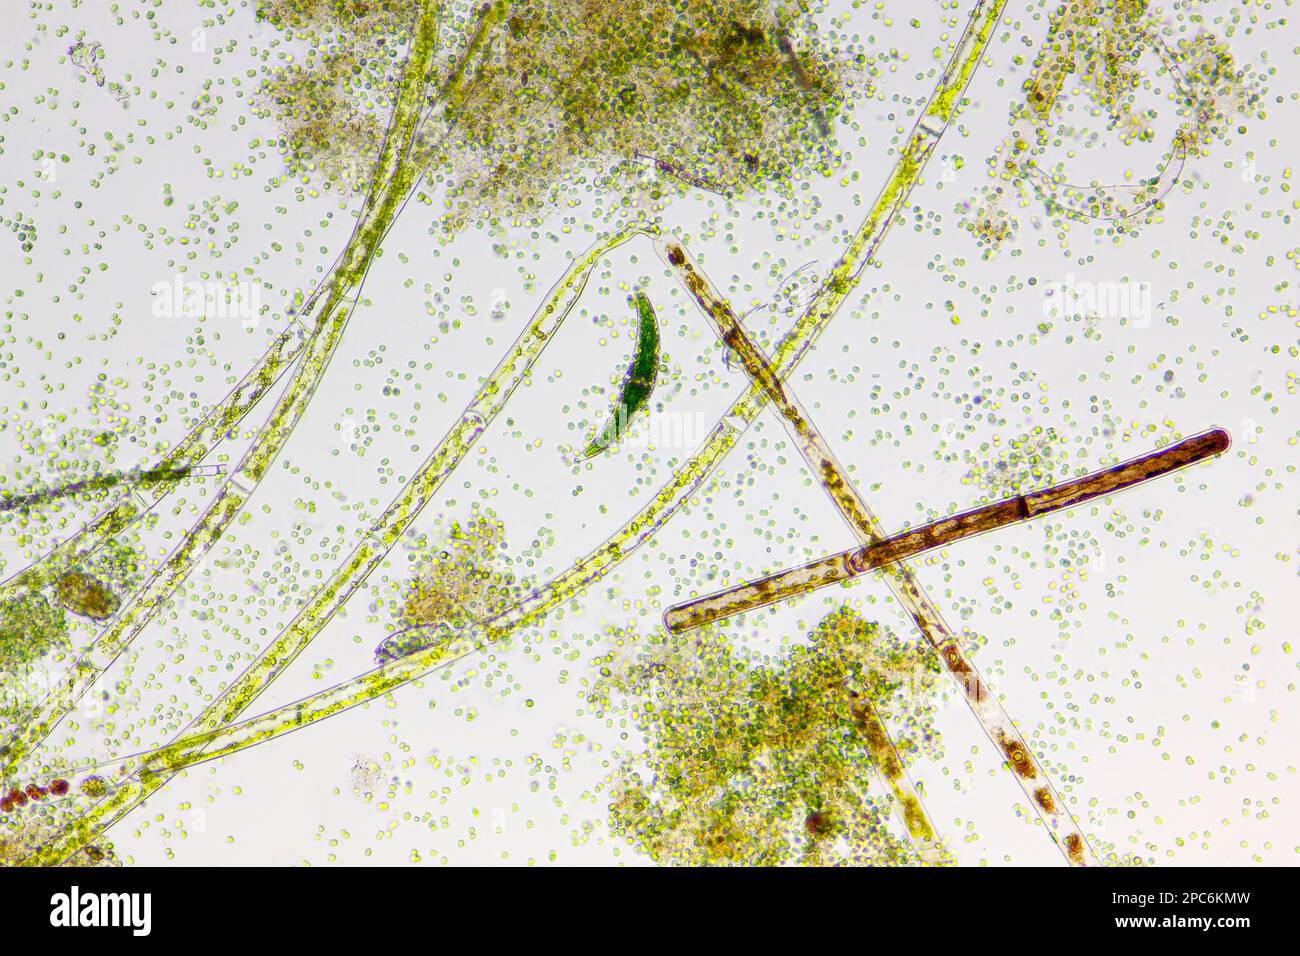 Mikroskopische Darstellung des Detritus mit verschiedenen Süsswasseralgenarten. Hellfeldbeleuchtung. Stockfoto